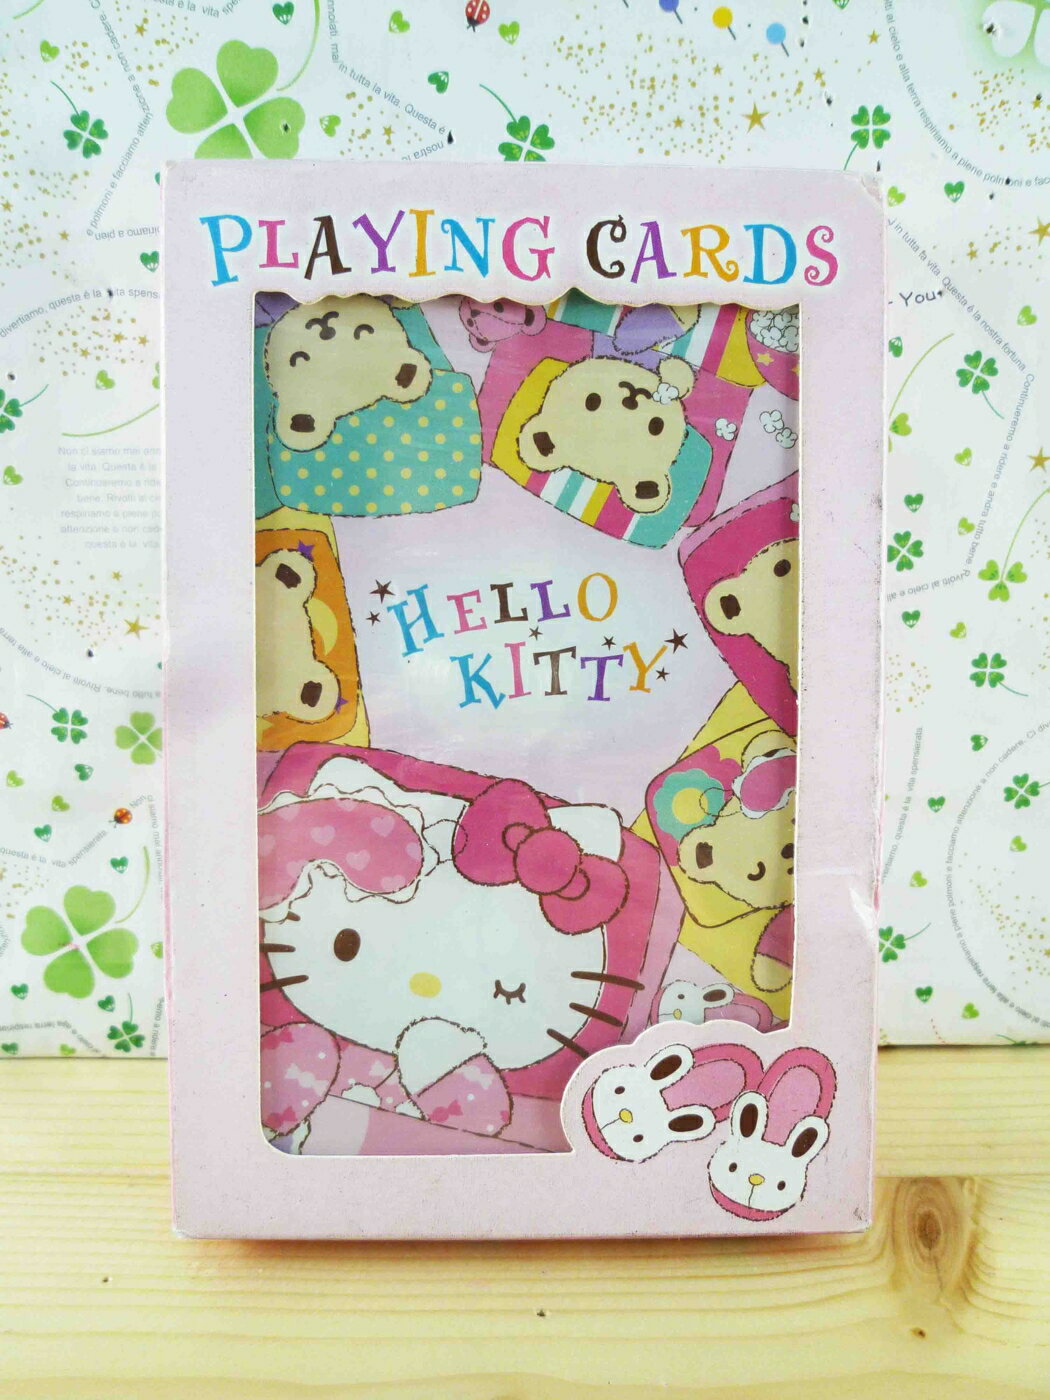 【震撼精品百貨】Hello Kitty 凱蒂貓 撲克牌-熊圖案-粉色 震撼日式精品百貨